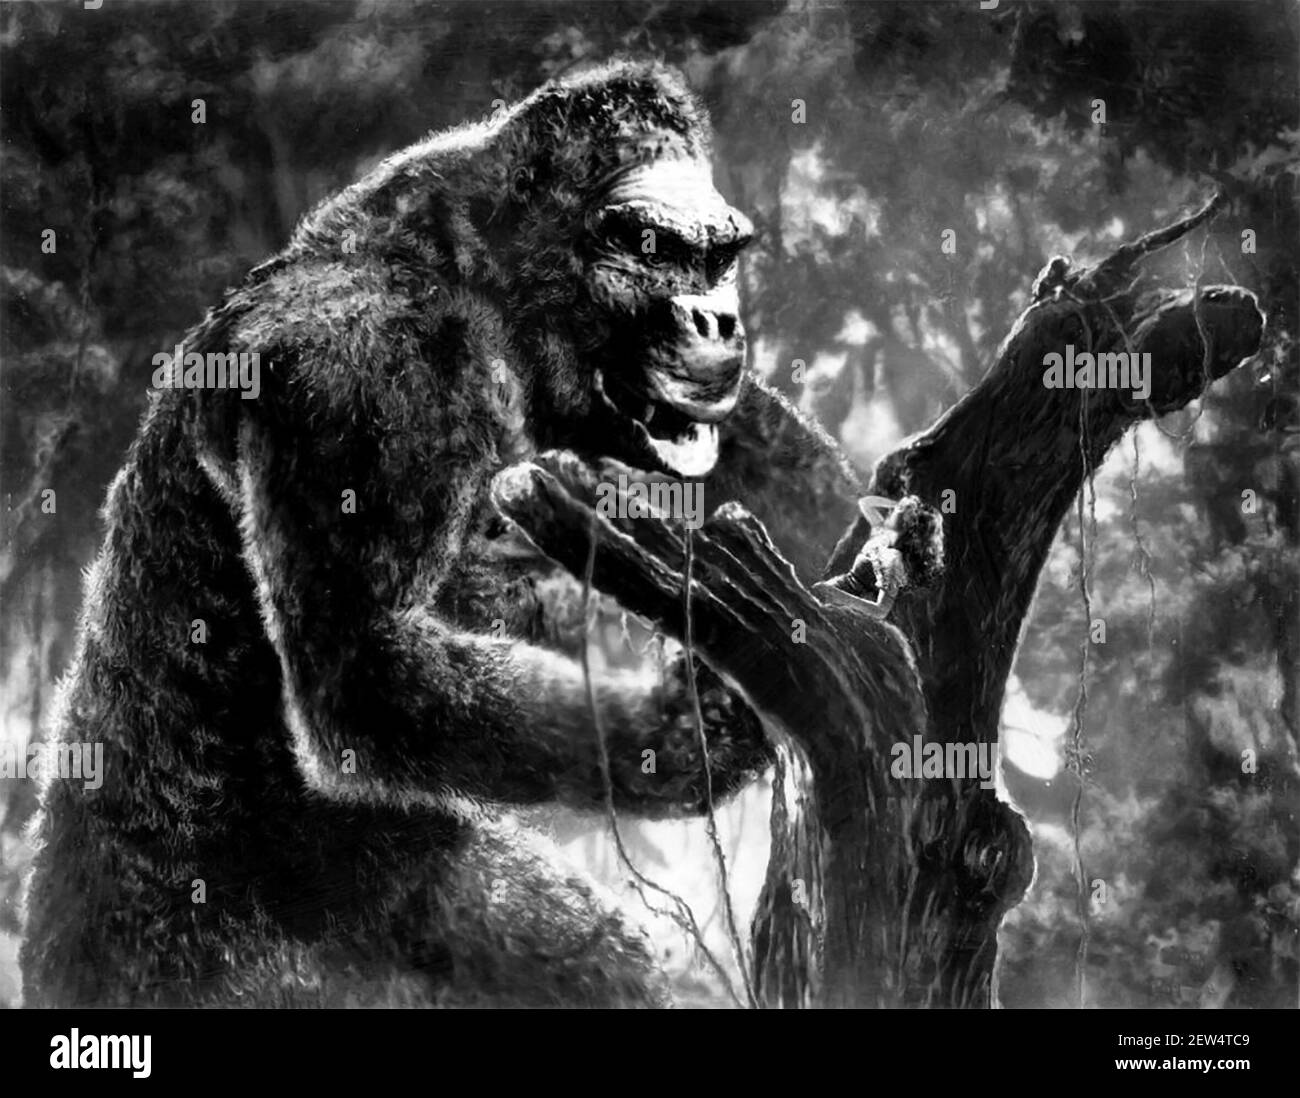 Foto di Publicty per il film del 1933 "King Kong", che mostra Fay Wray con la gigantesca ape Foto Stock